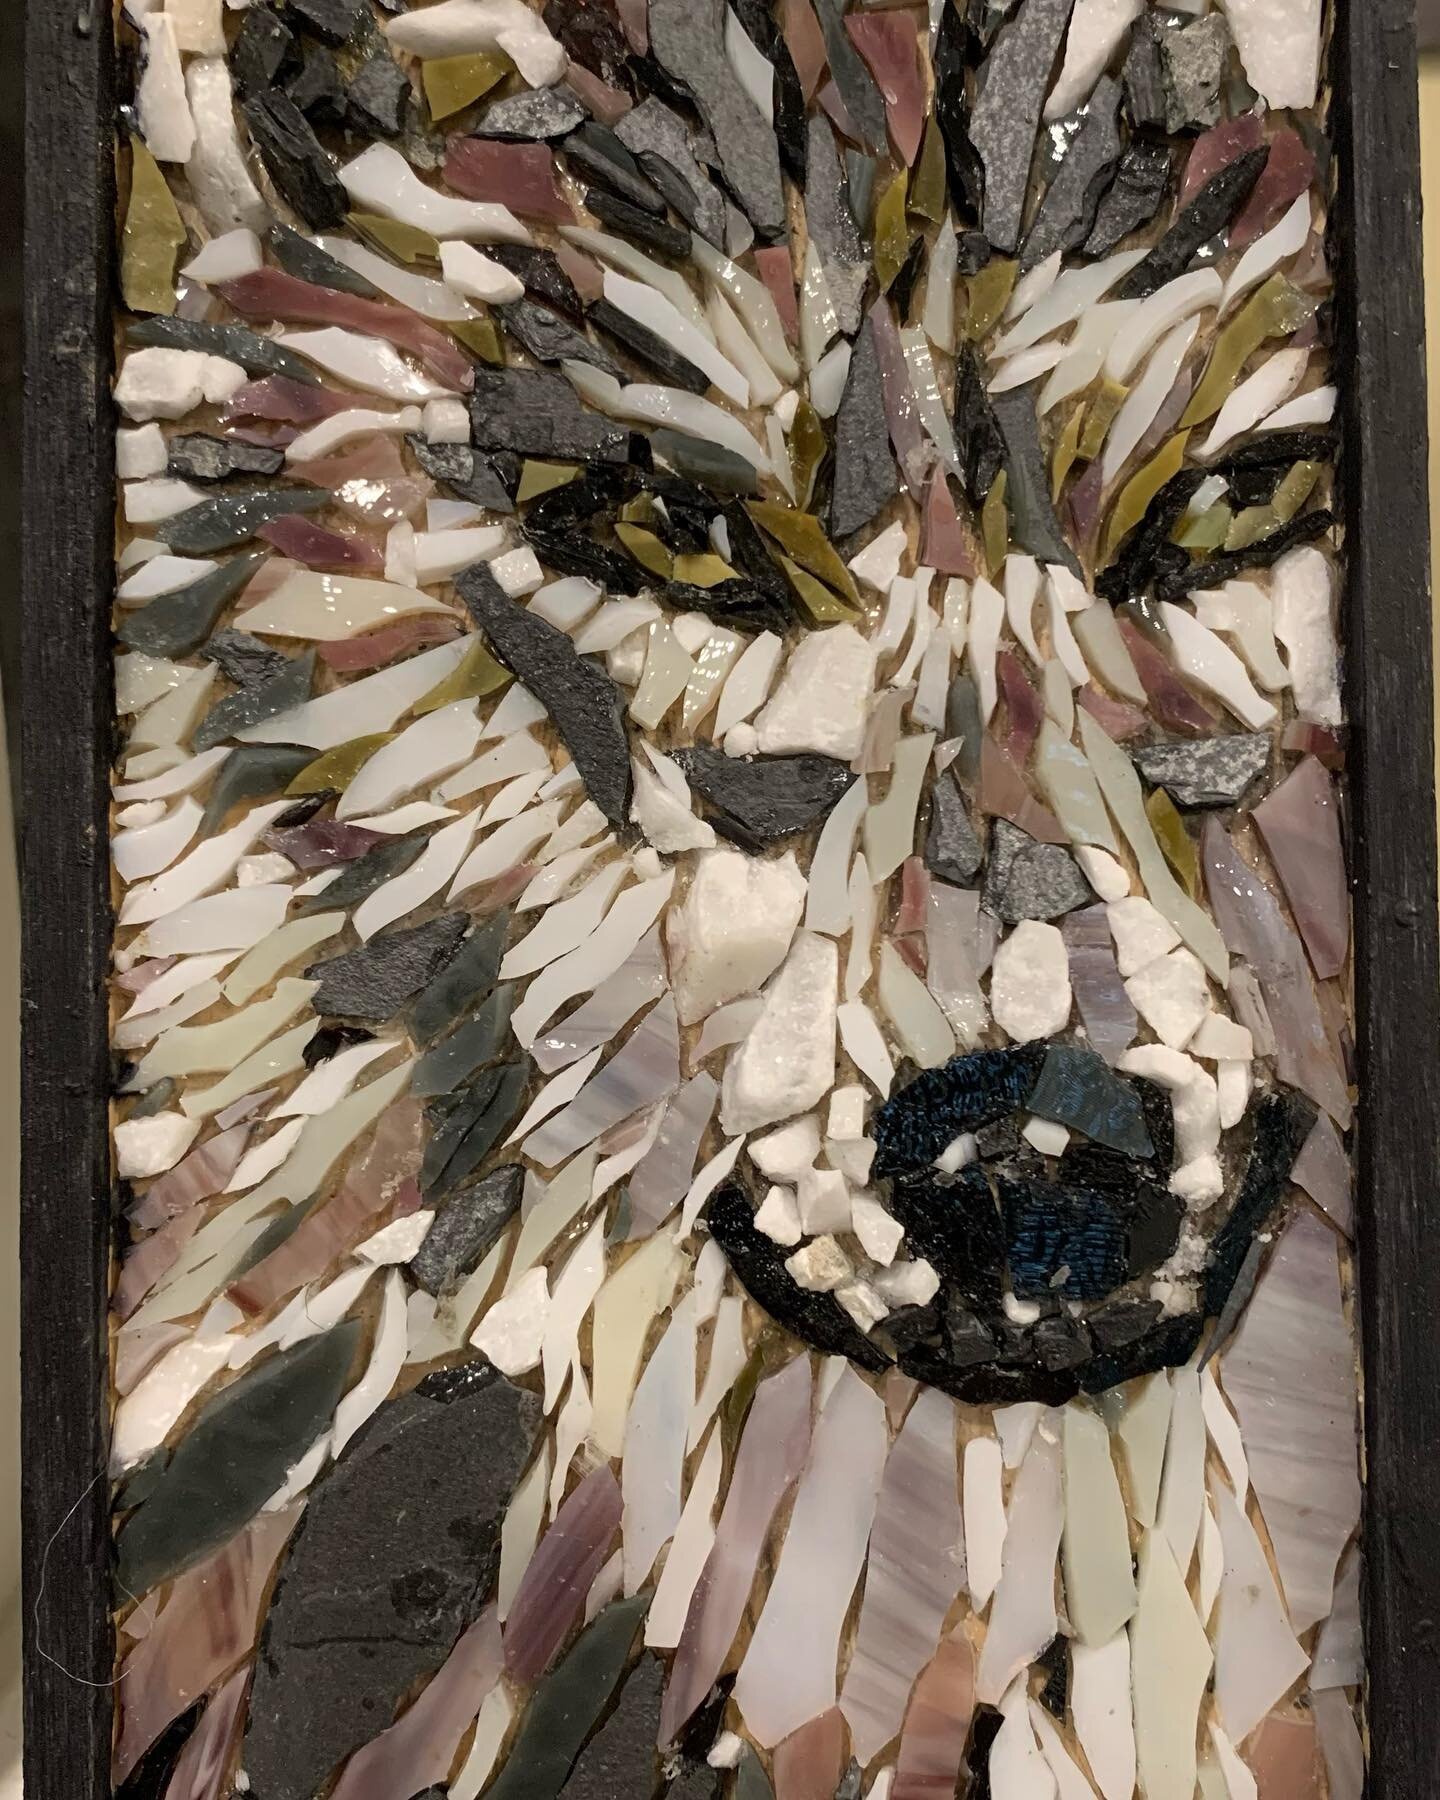 #mosaicart #mosaics #graywolf #cincinnatiarts #wolves